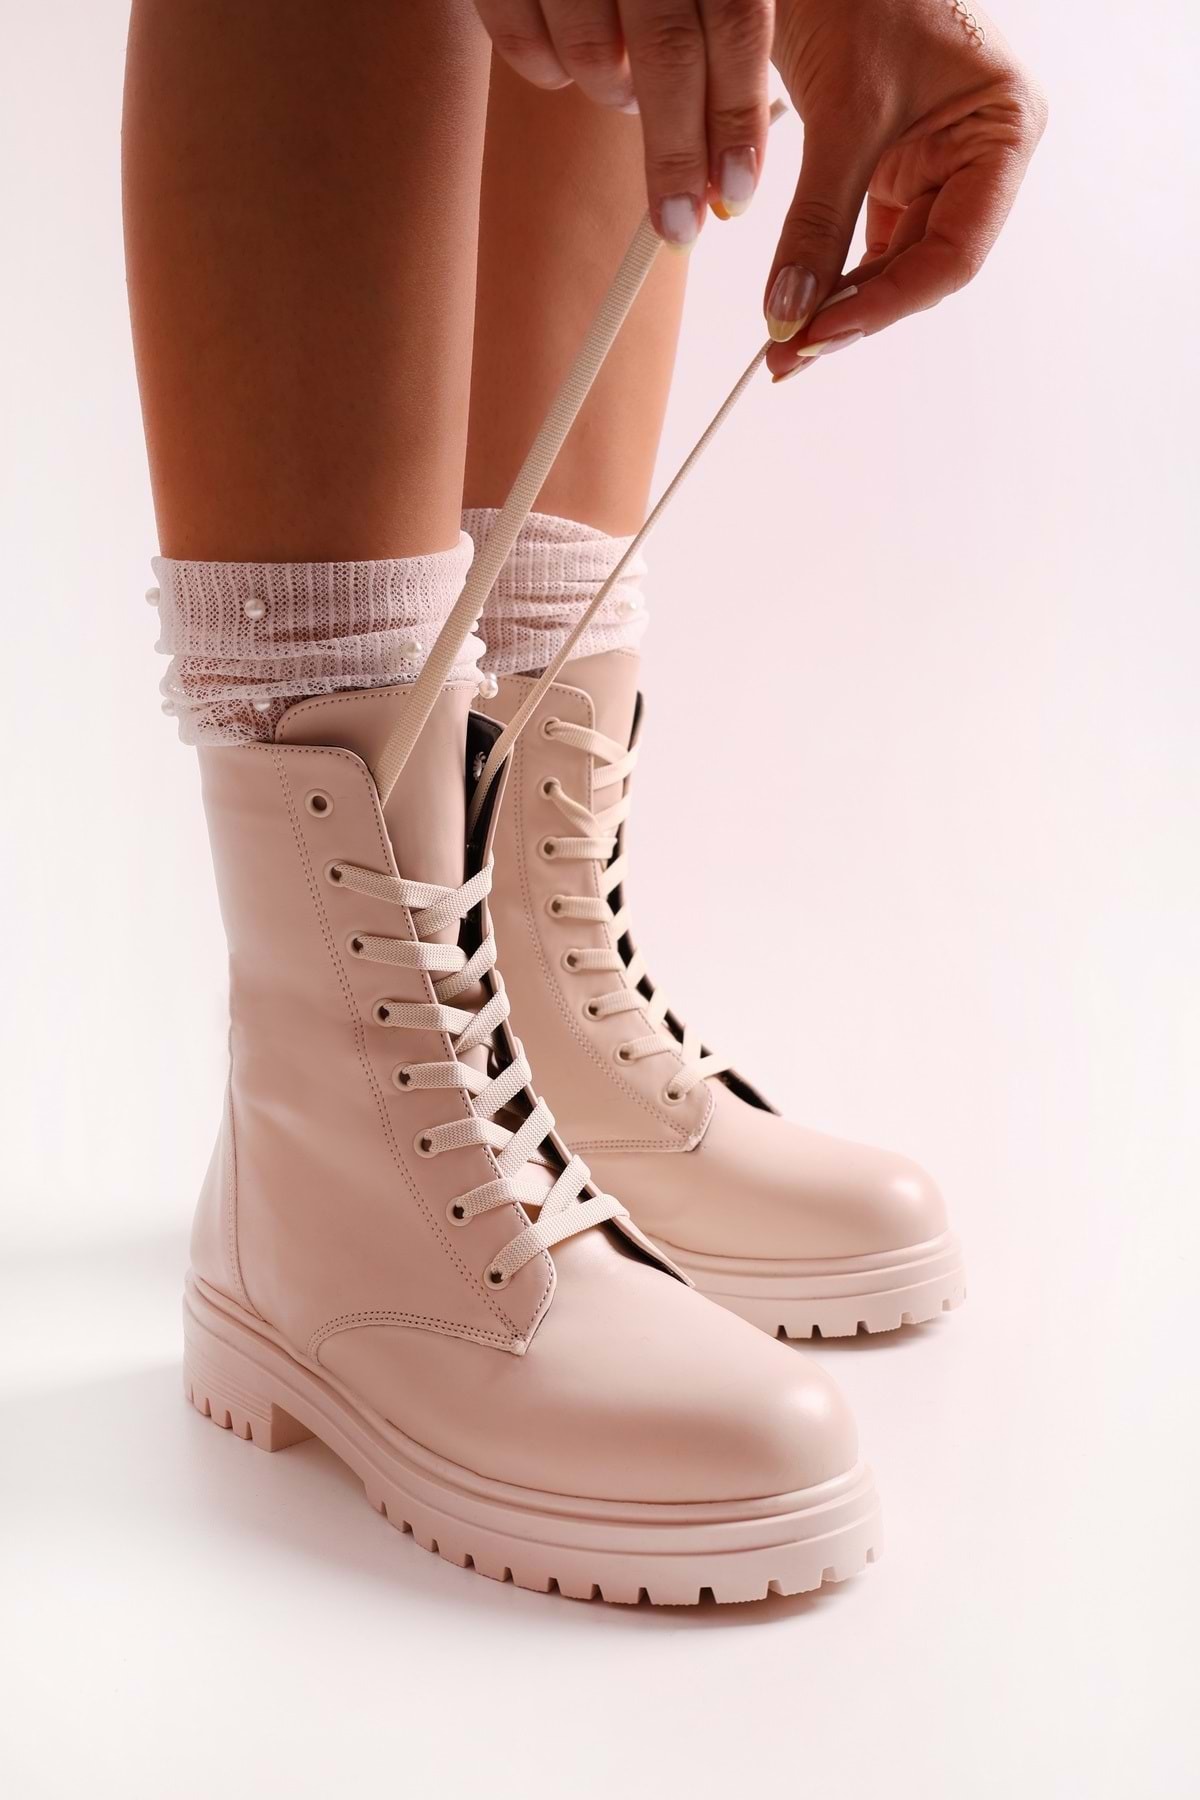 Shoeberry Women's Aleah Beige Skin Boots Boots Beige Skin